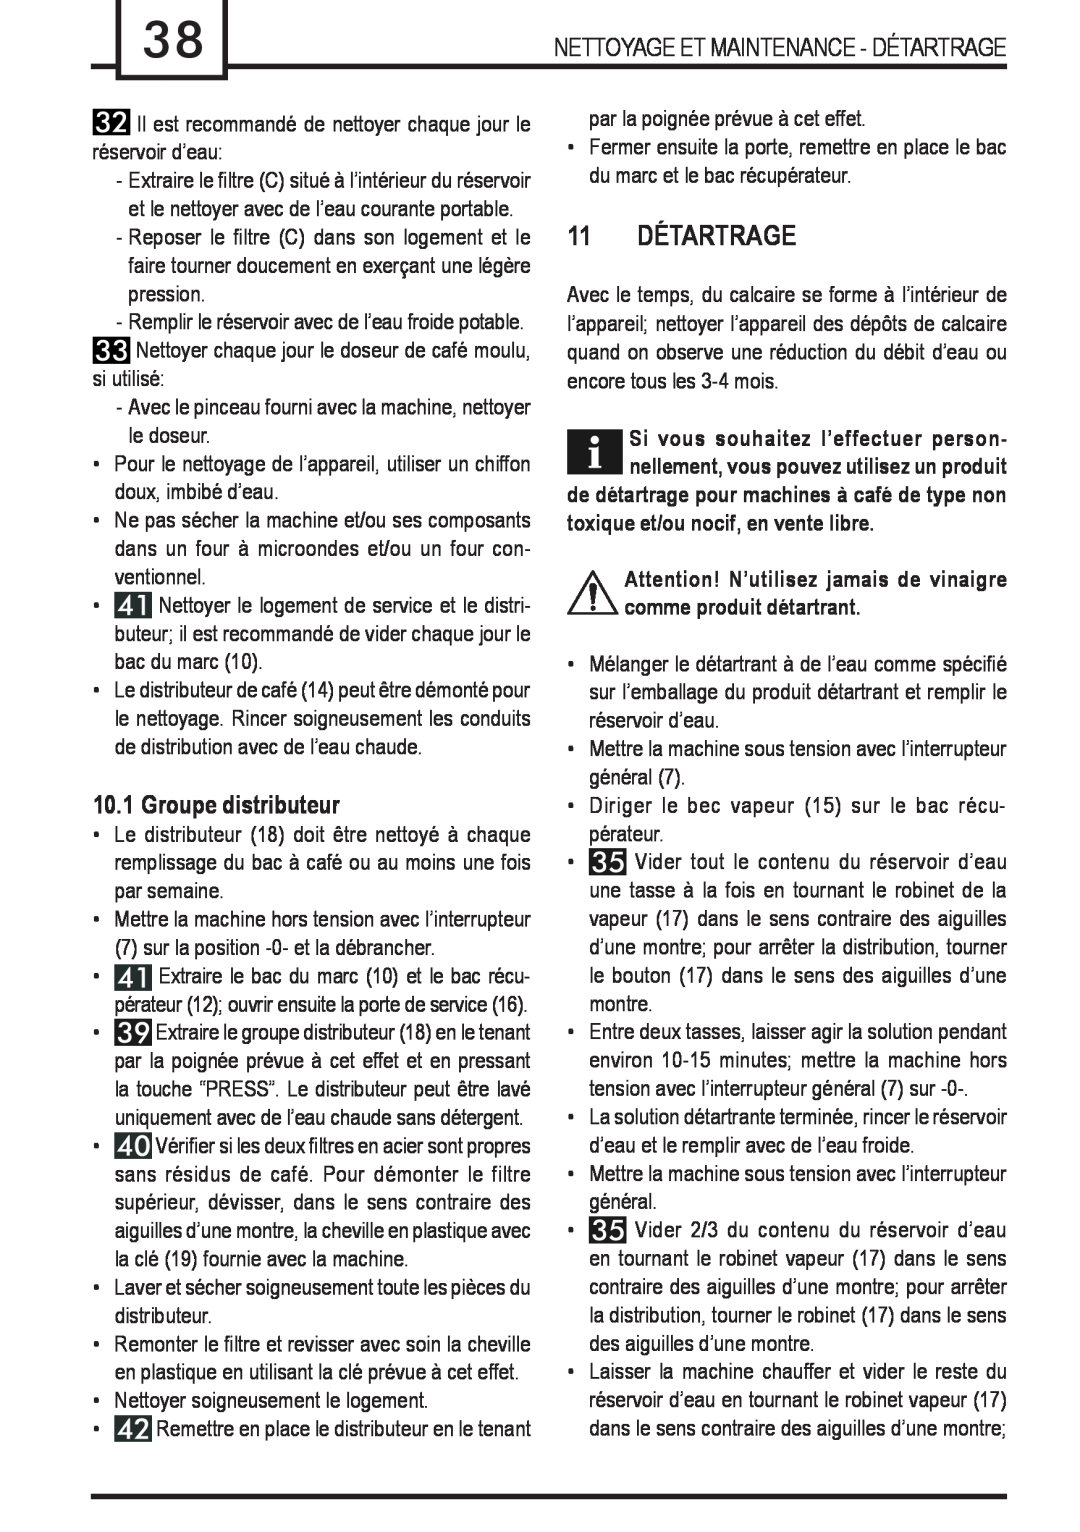 Gaggia Syncrony manual 11 DÉTARTRAGE, Groupe distributeur, toxique et/ou nocif, en vente libre 